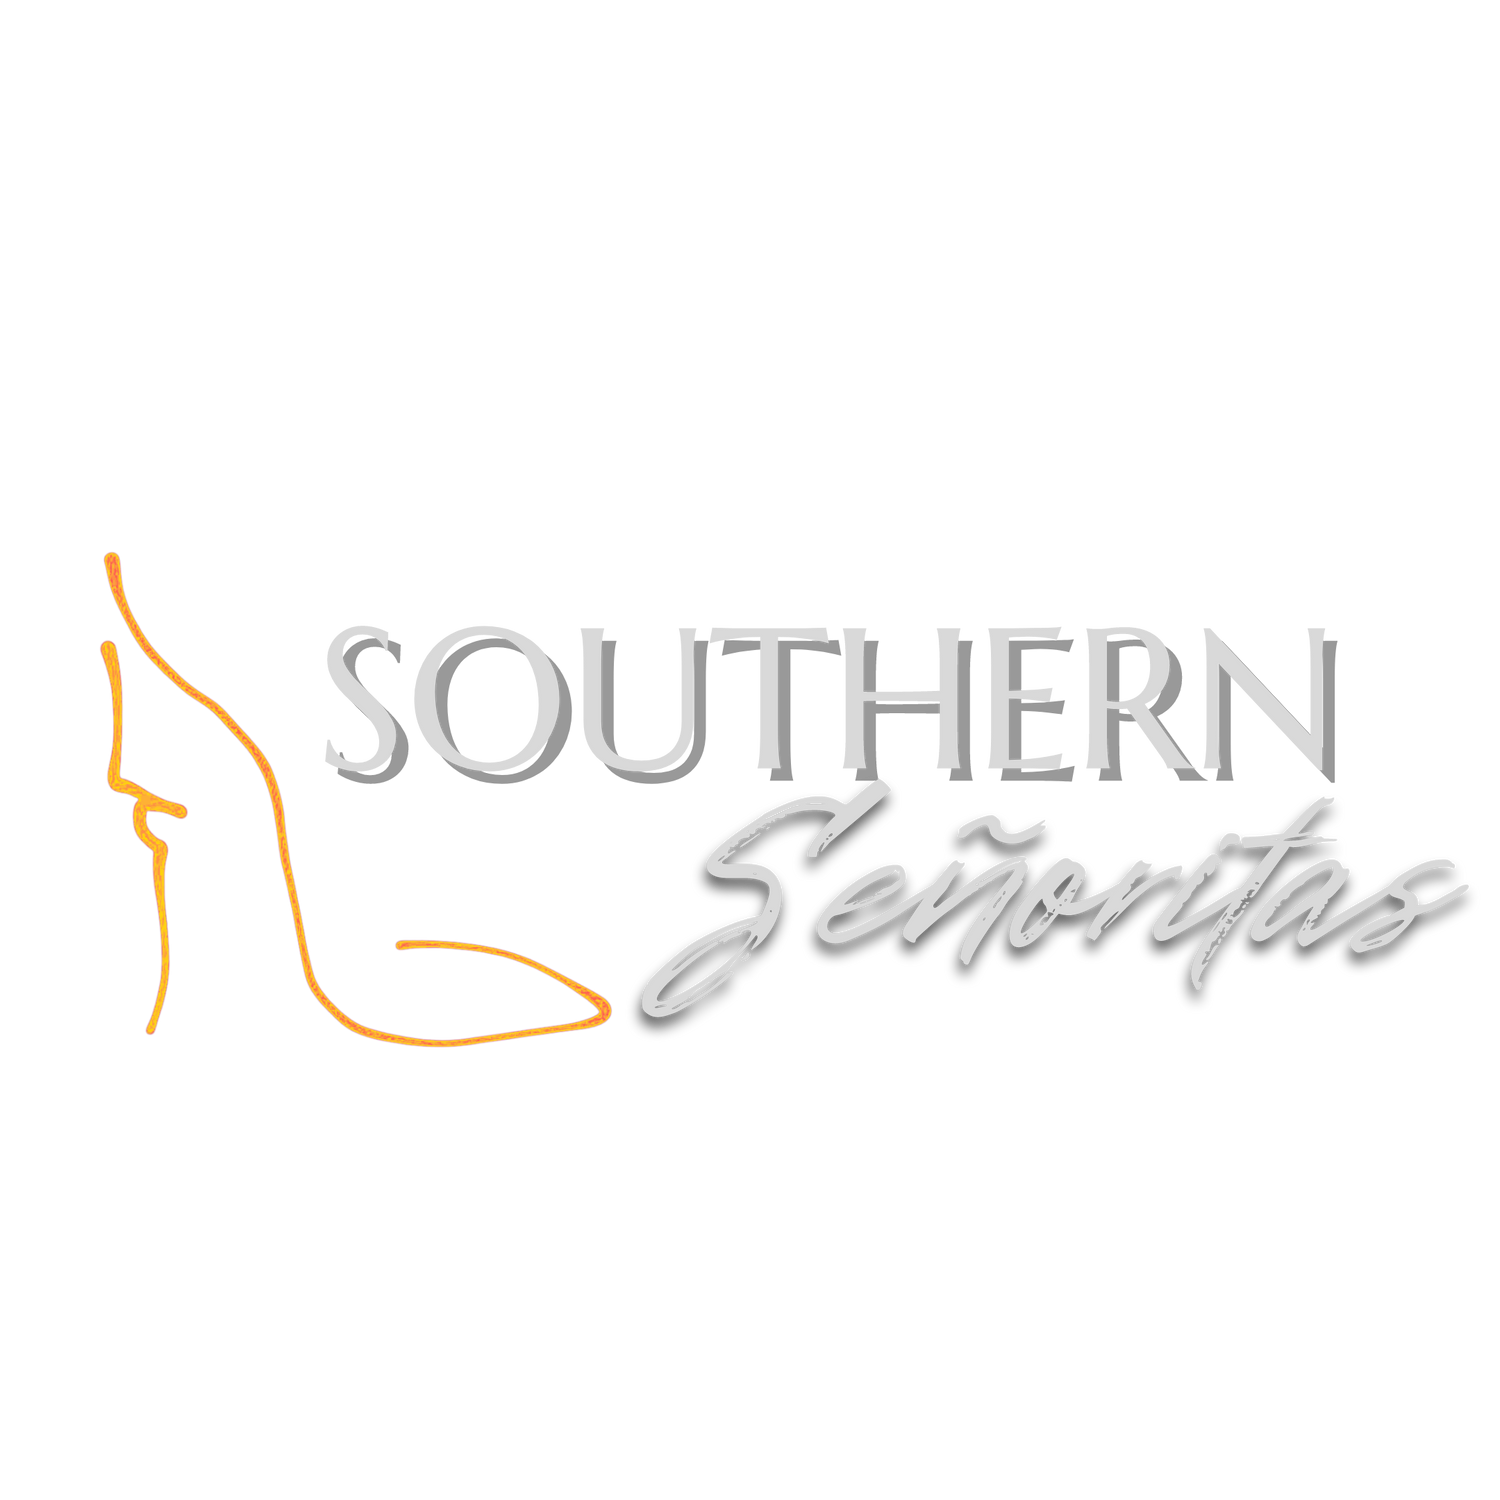 Southern Señoritas at ASBF22